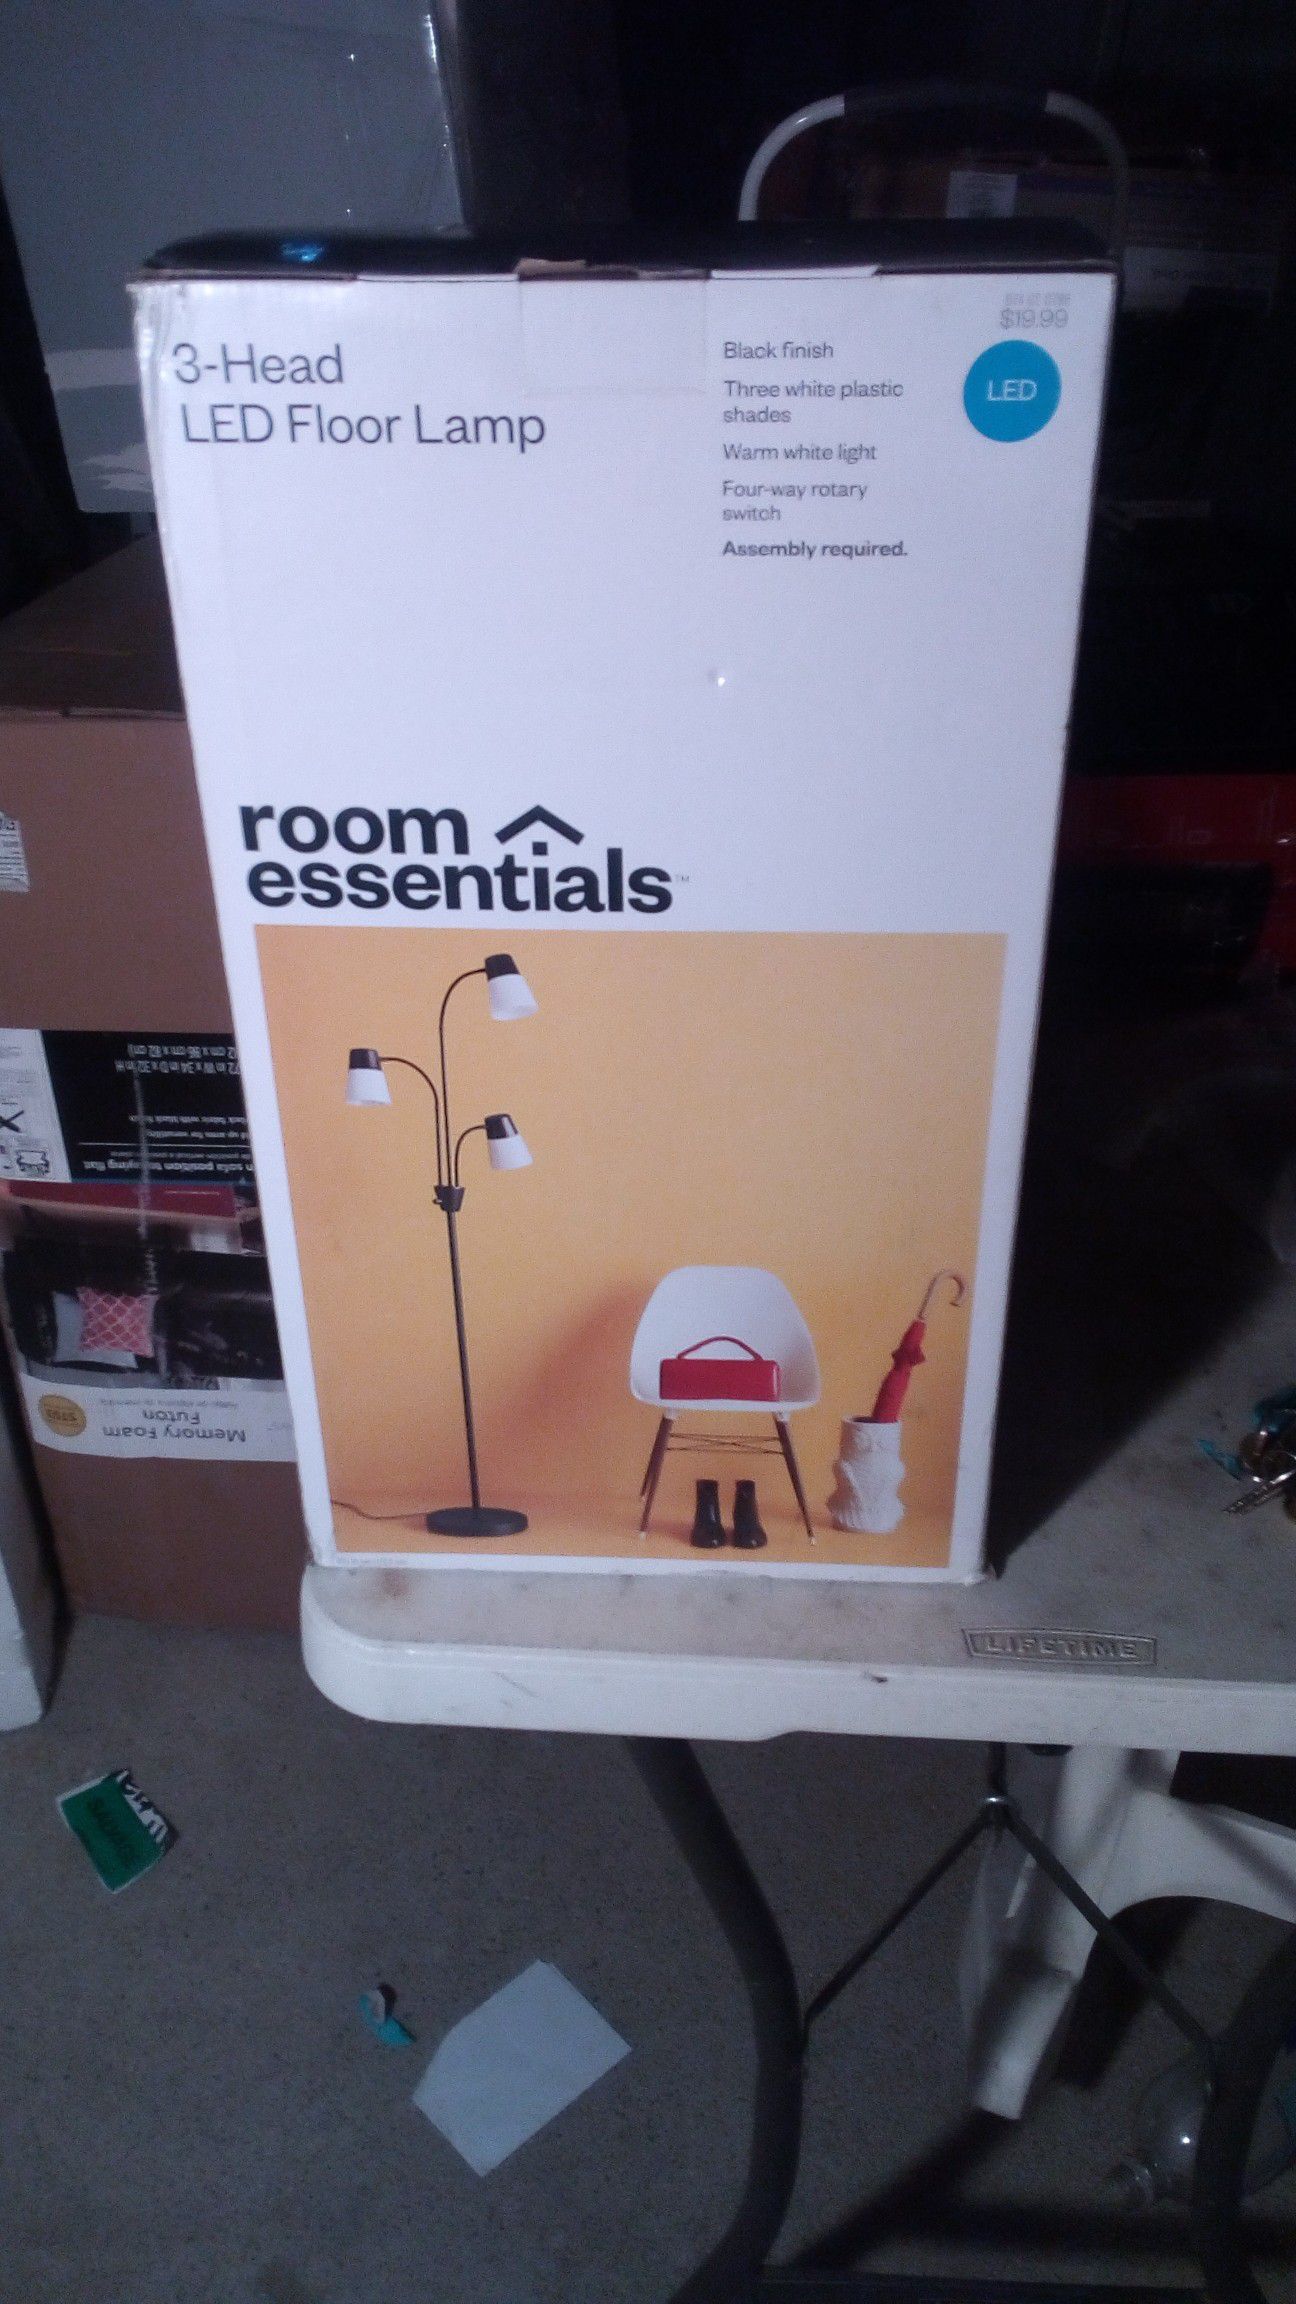 Room essentials- 3 head floor lamp